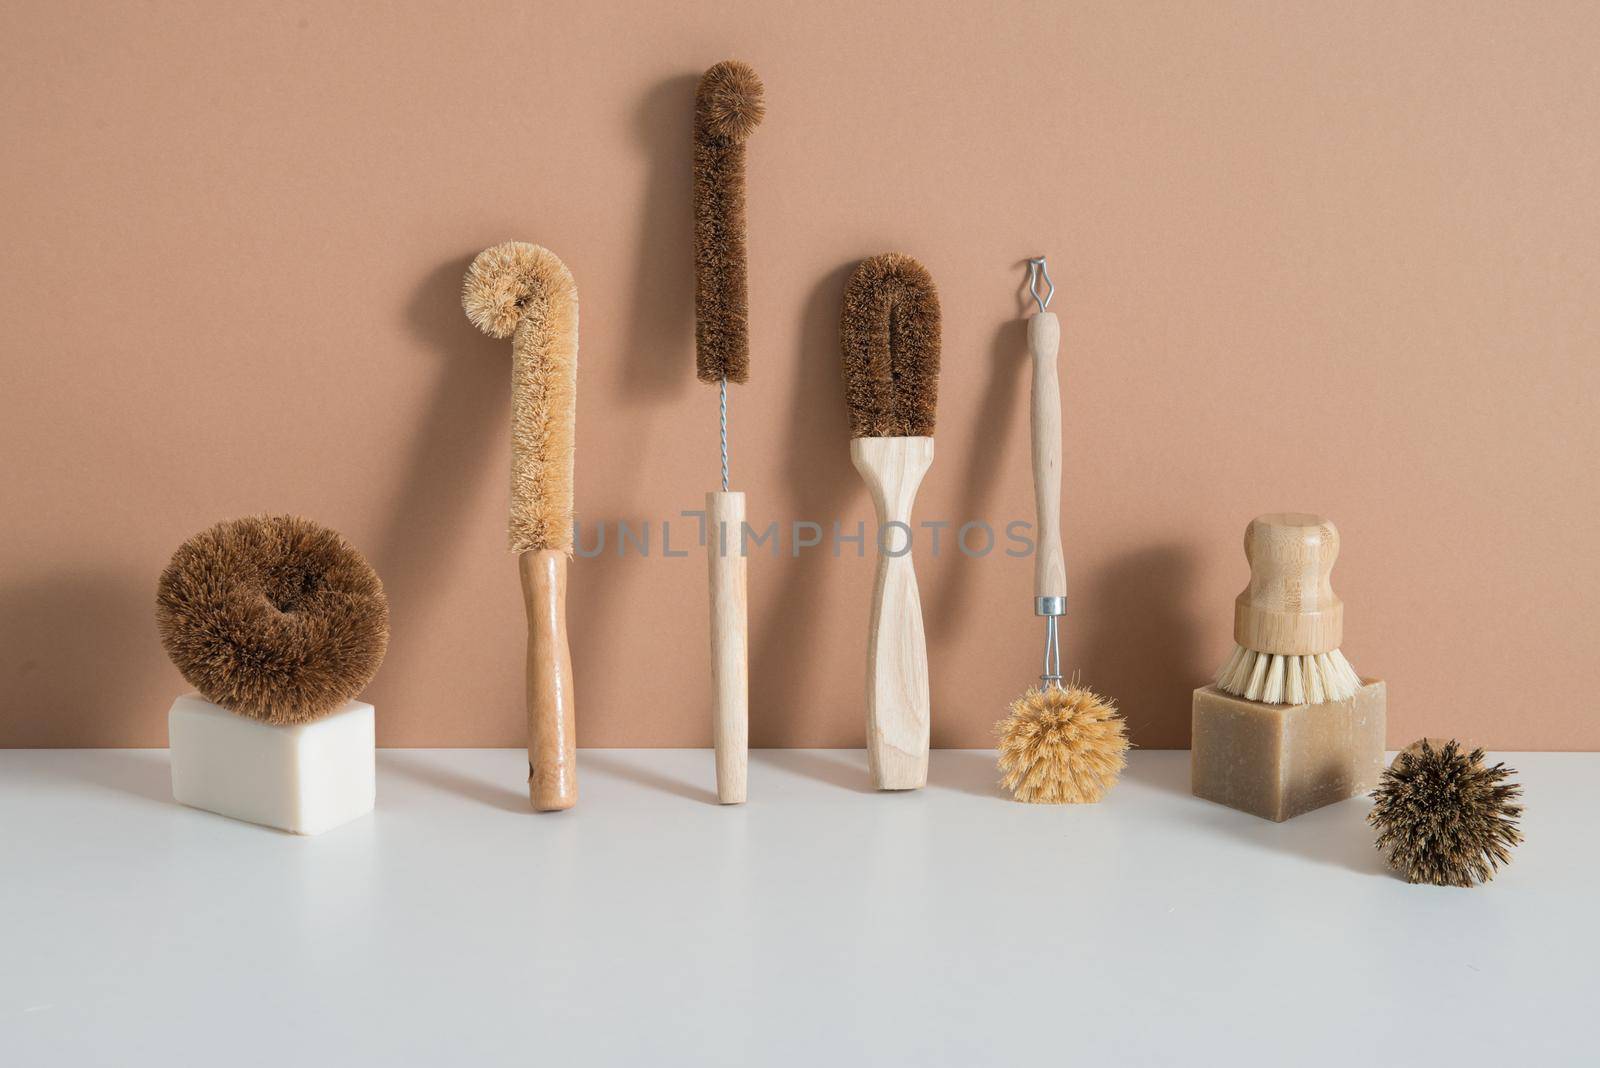 set of zero waste bamboo brushes for dishwashing by maramorosz